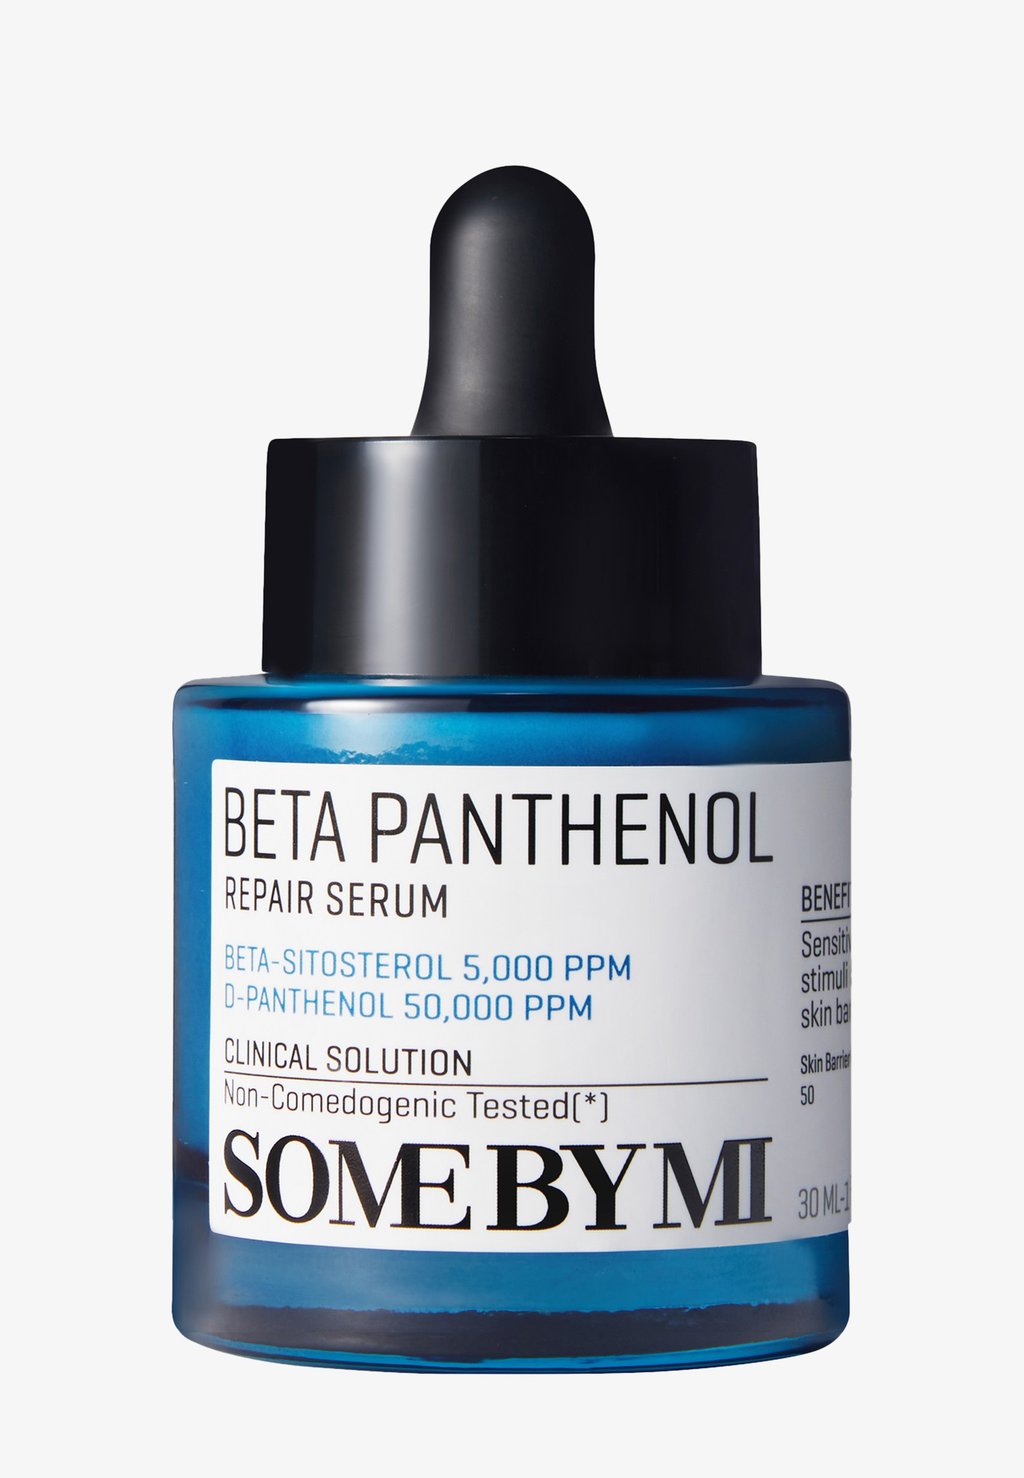 some by mi beta panthenol repair serum Сыворотка Beta Panthenol Repair Serum SOME BY MI